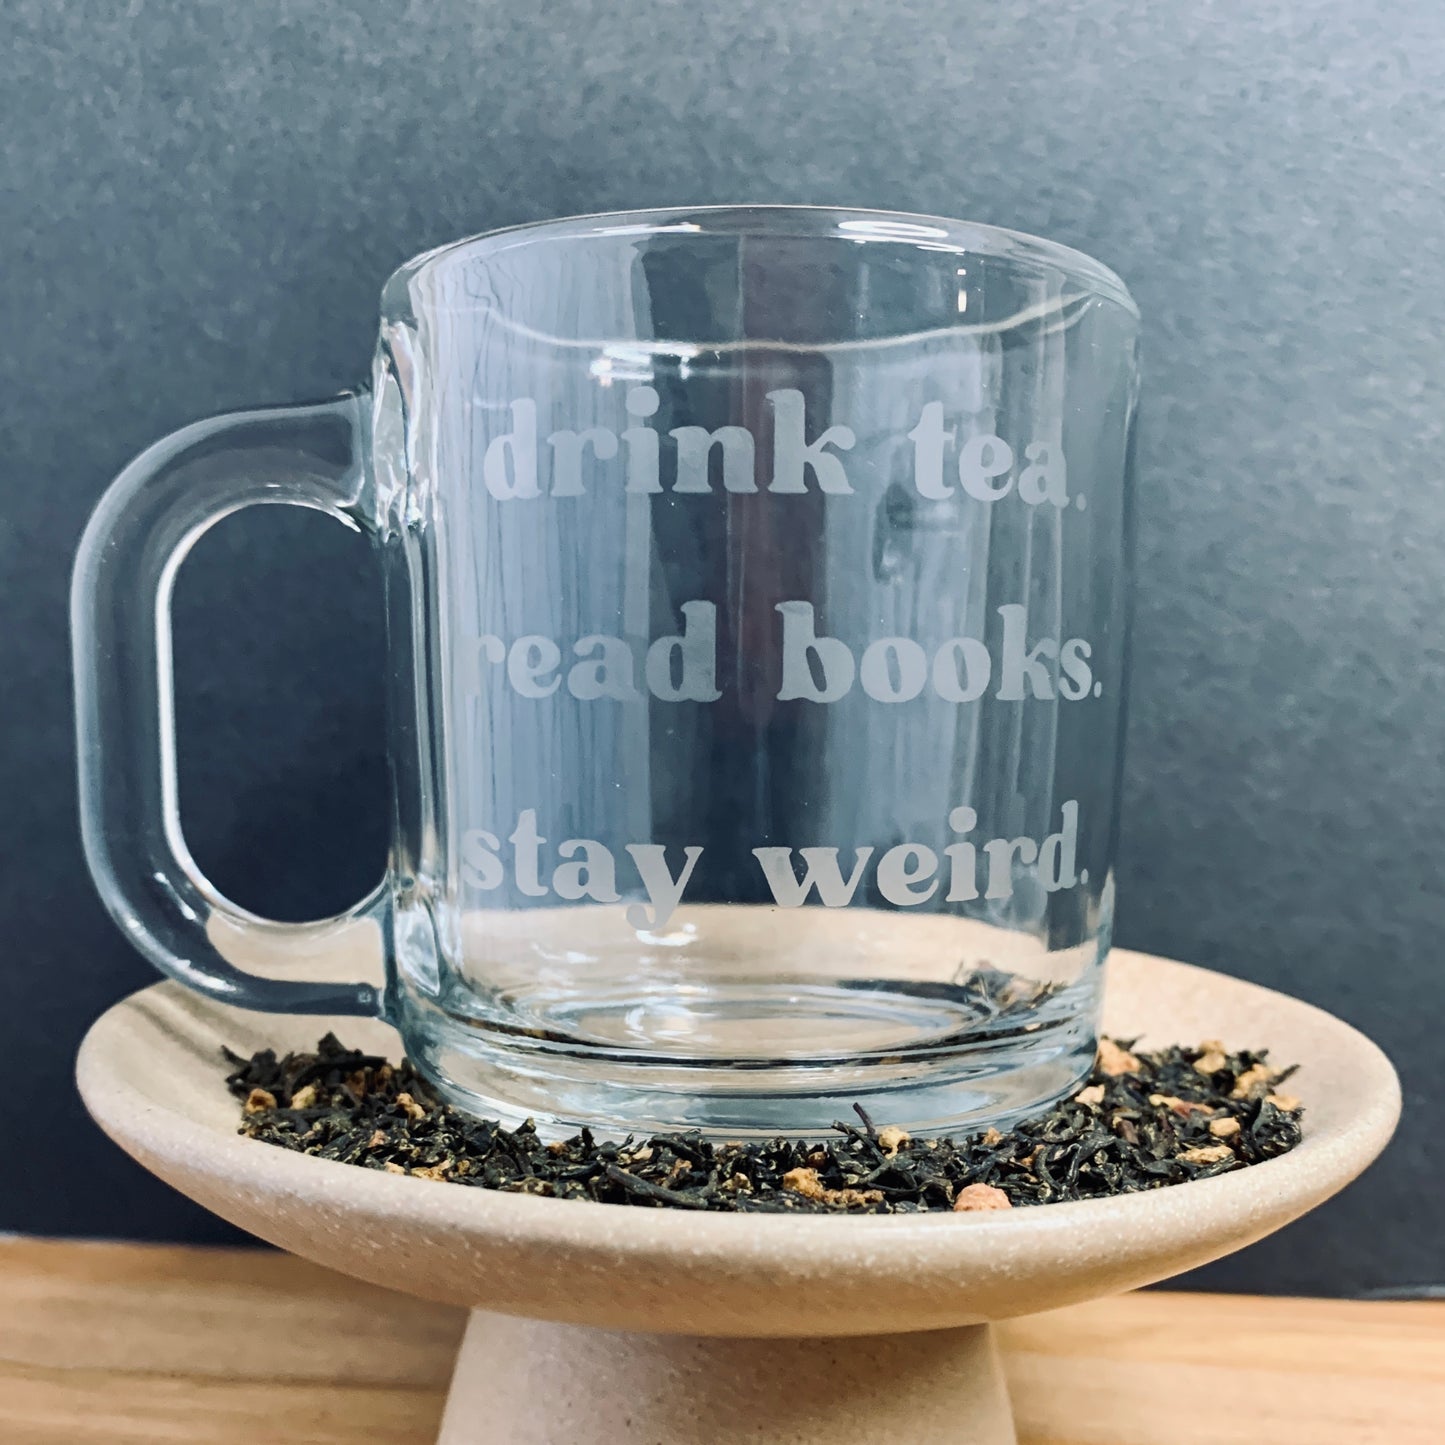 Drink Tea, Read Books, Stay Weird Glass Mug